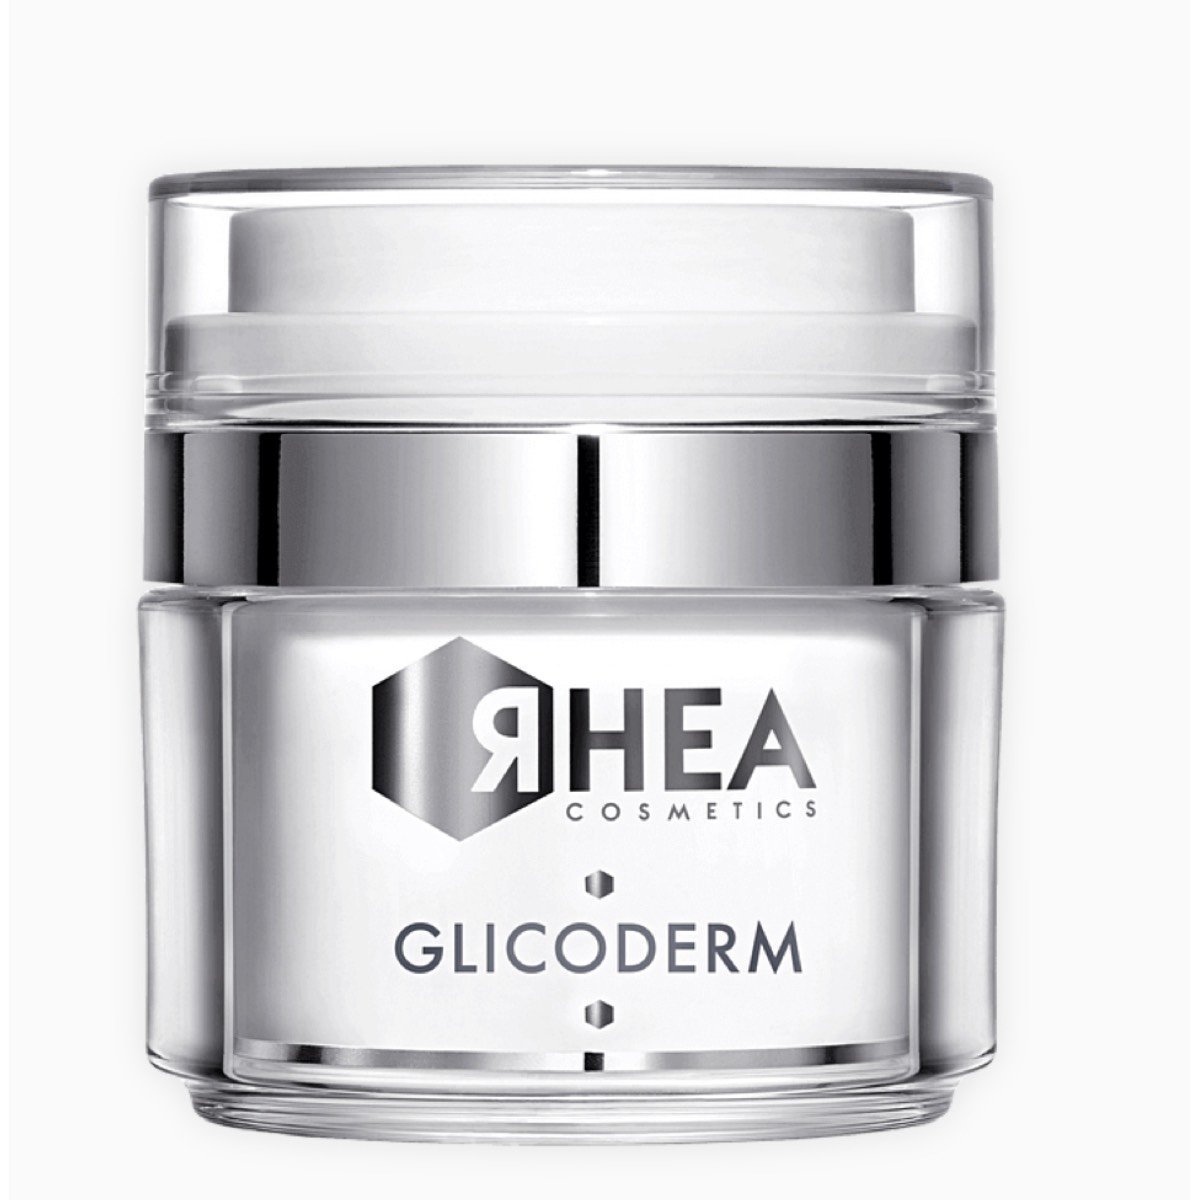 Крем эксфолиирующий для лица GlicoDerm ЯHEA Cosmetics 50мл — фото №1